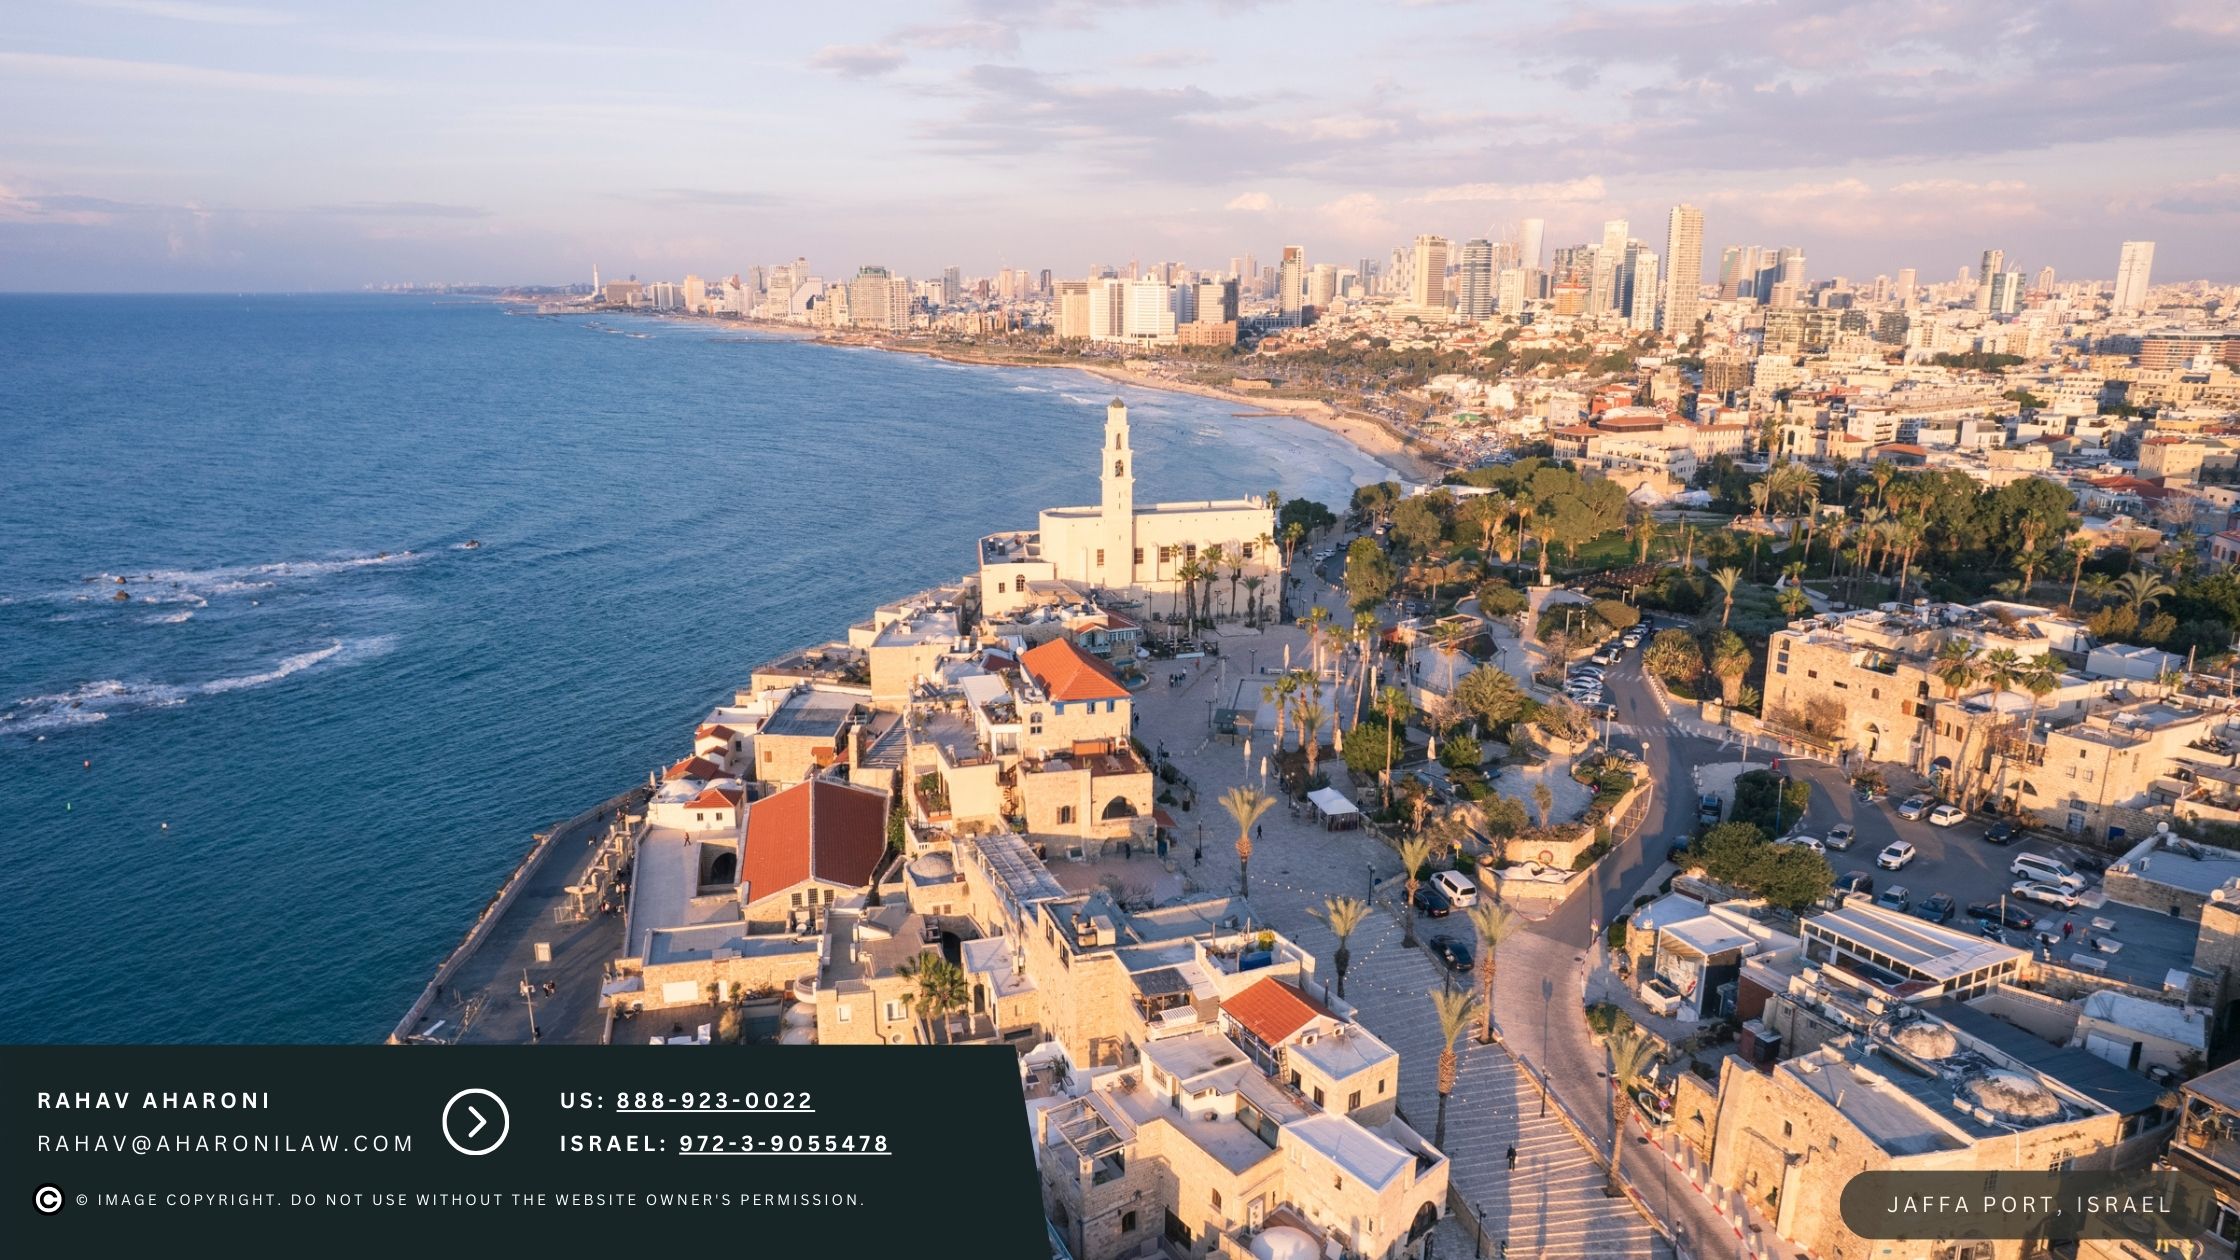 Jaffa Port Israel